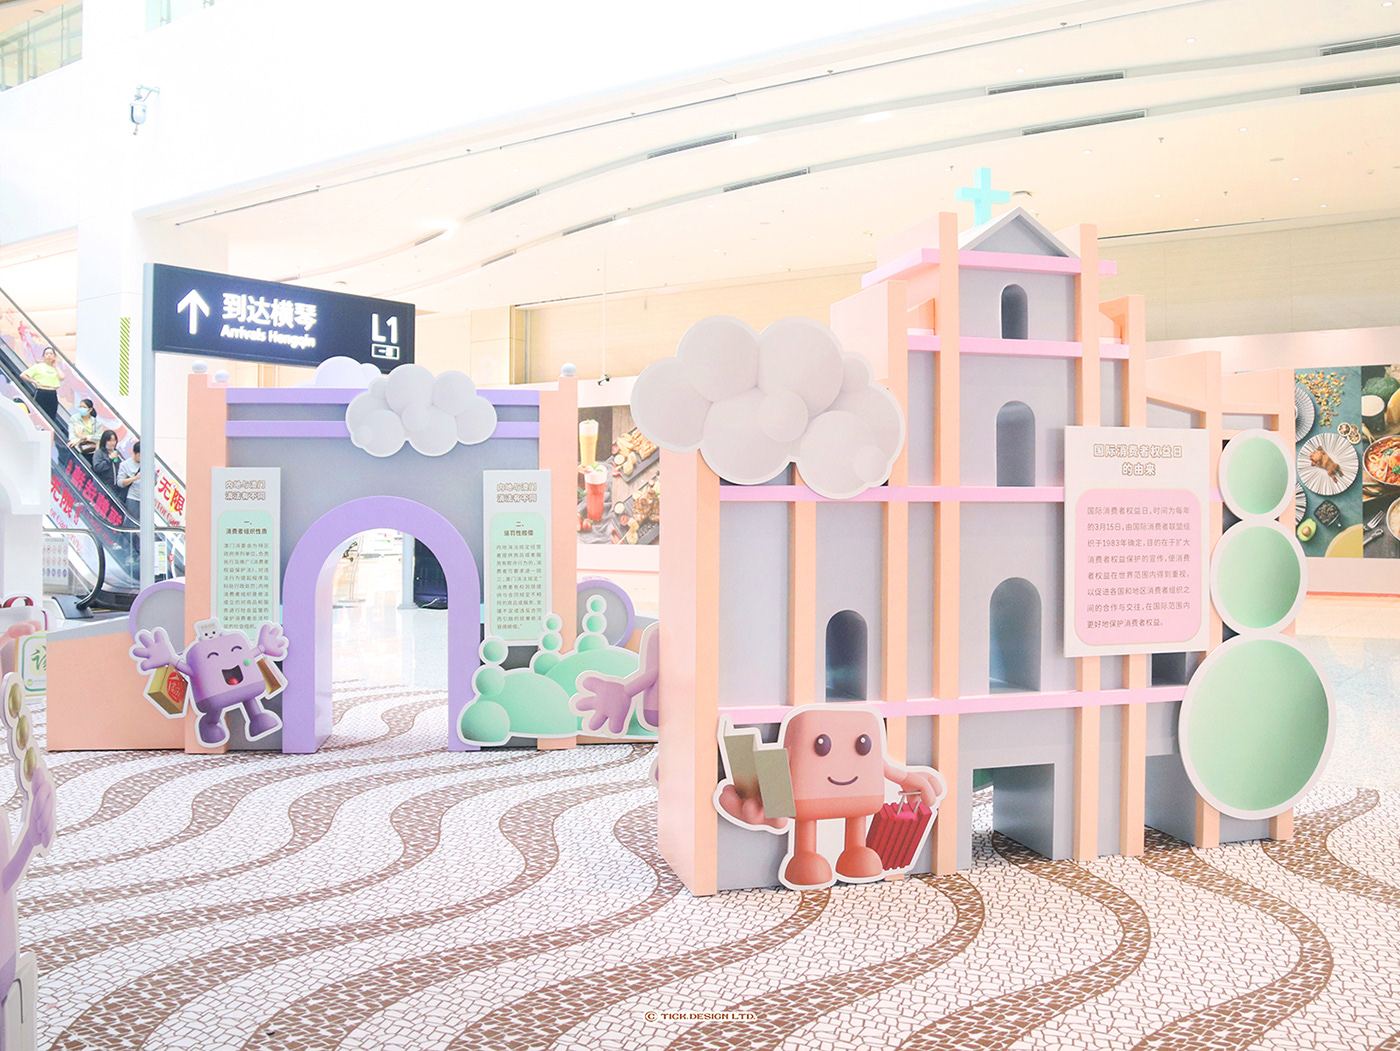 Exhibition  Exhibition Design  Exhibition Booth Landmark Mascot palette fantasy 3D building macaron